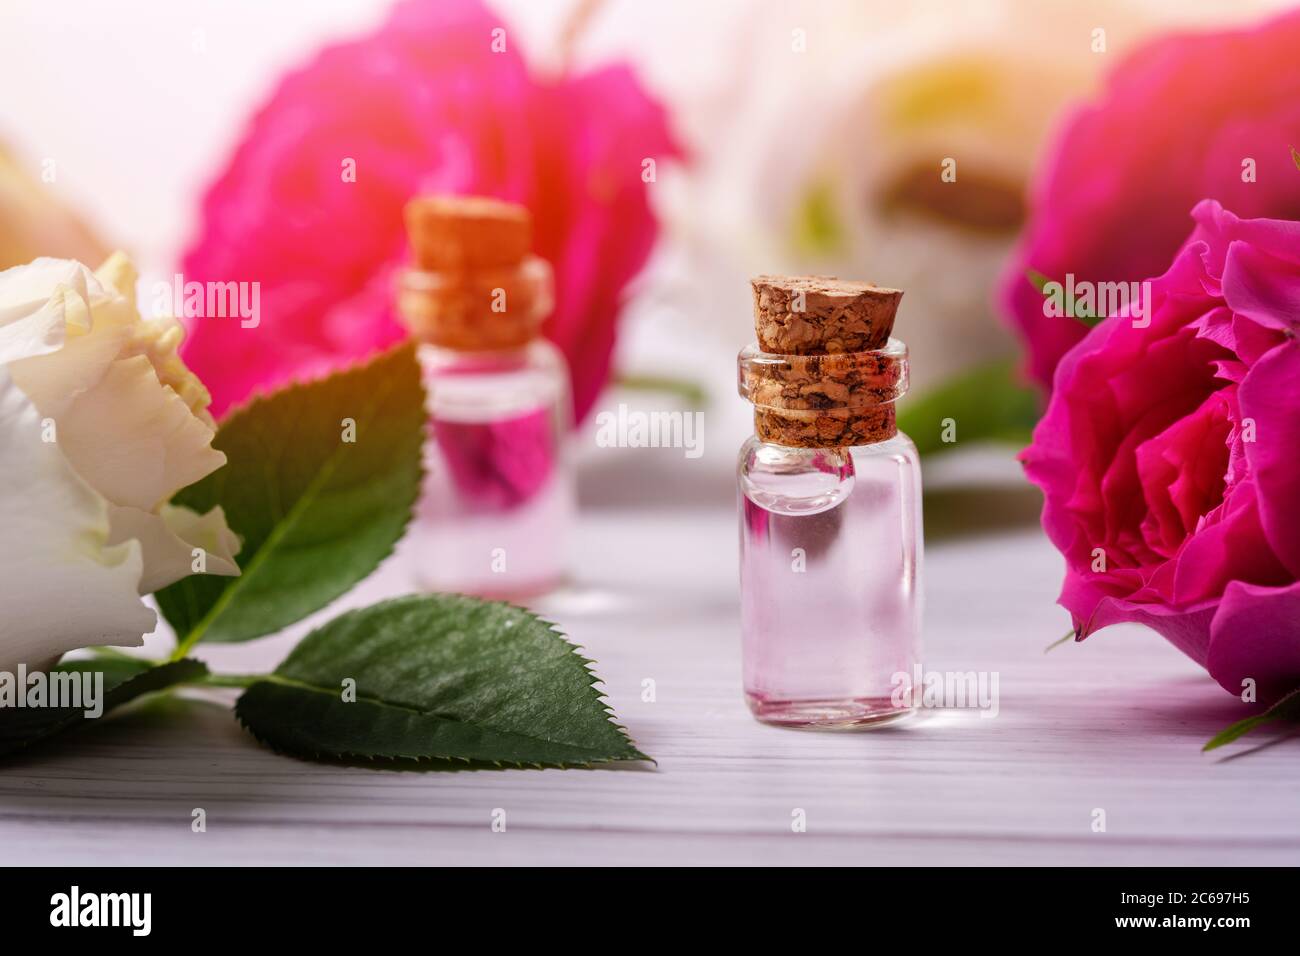 eau de rose parfumée ou huile essentielle dans des bouteilles de verre avec des fleurs sur une table en bois Banque D'Images